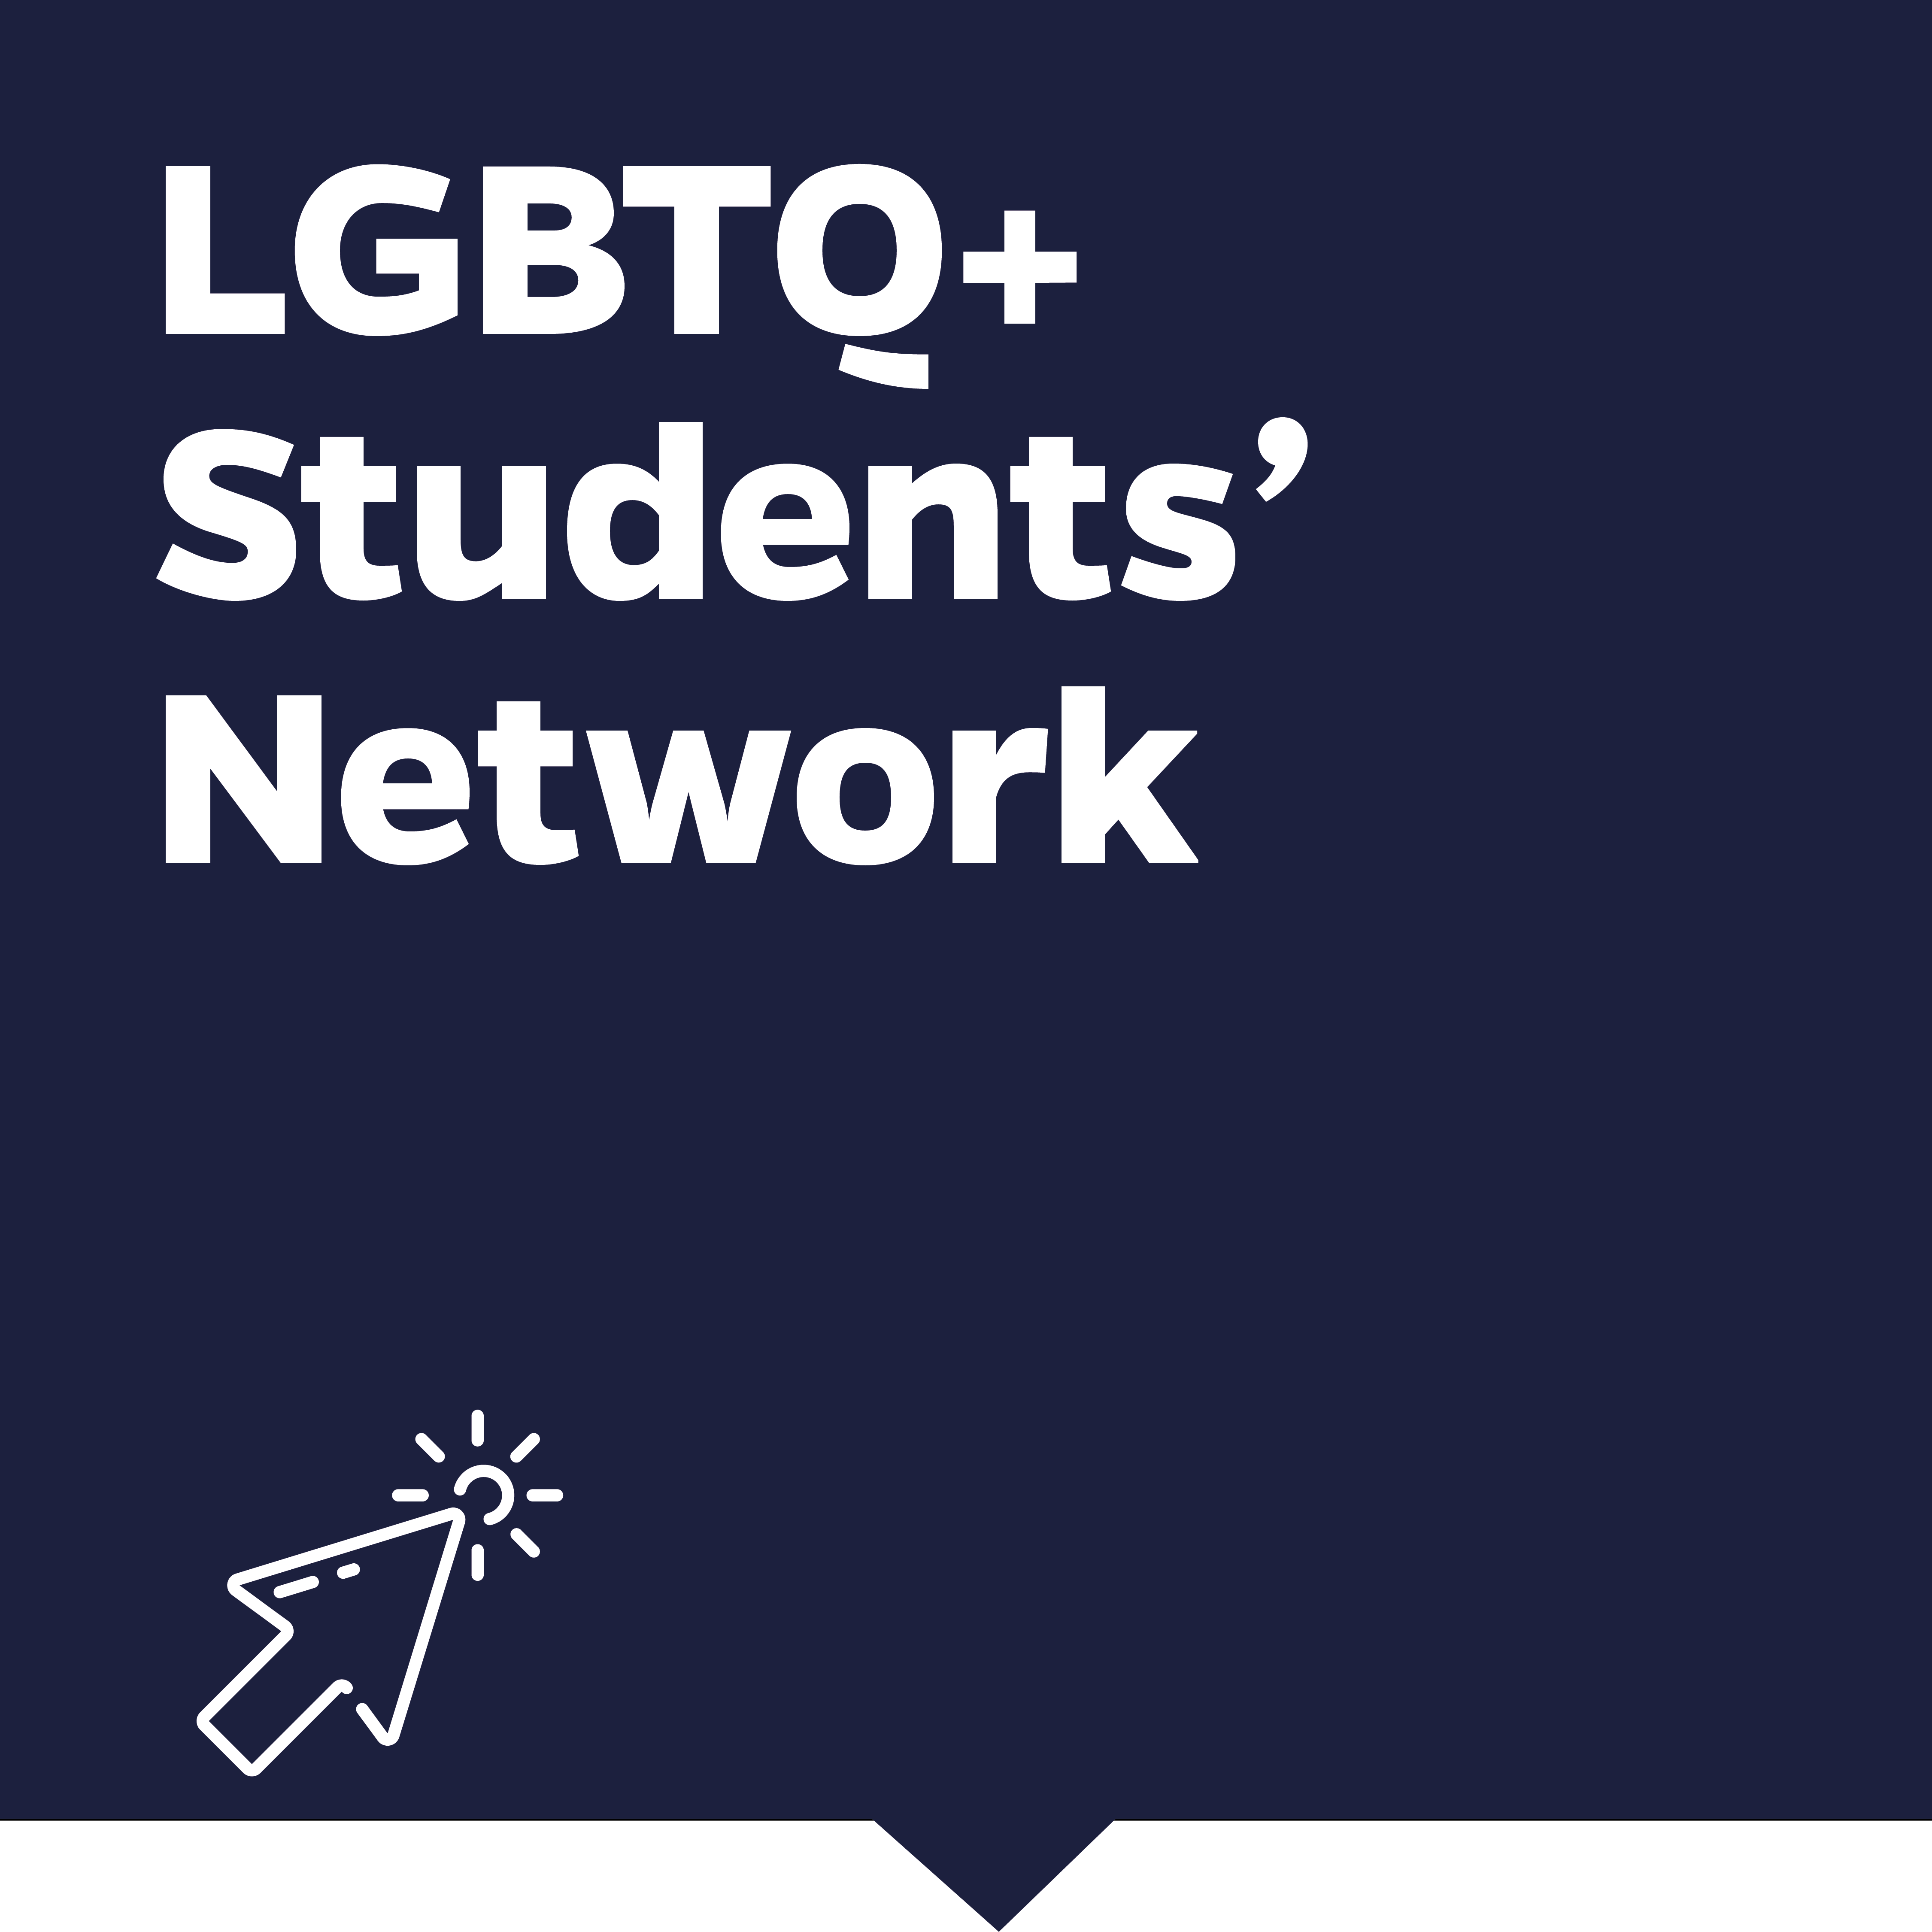 LGBTQ+ Students' Network